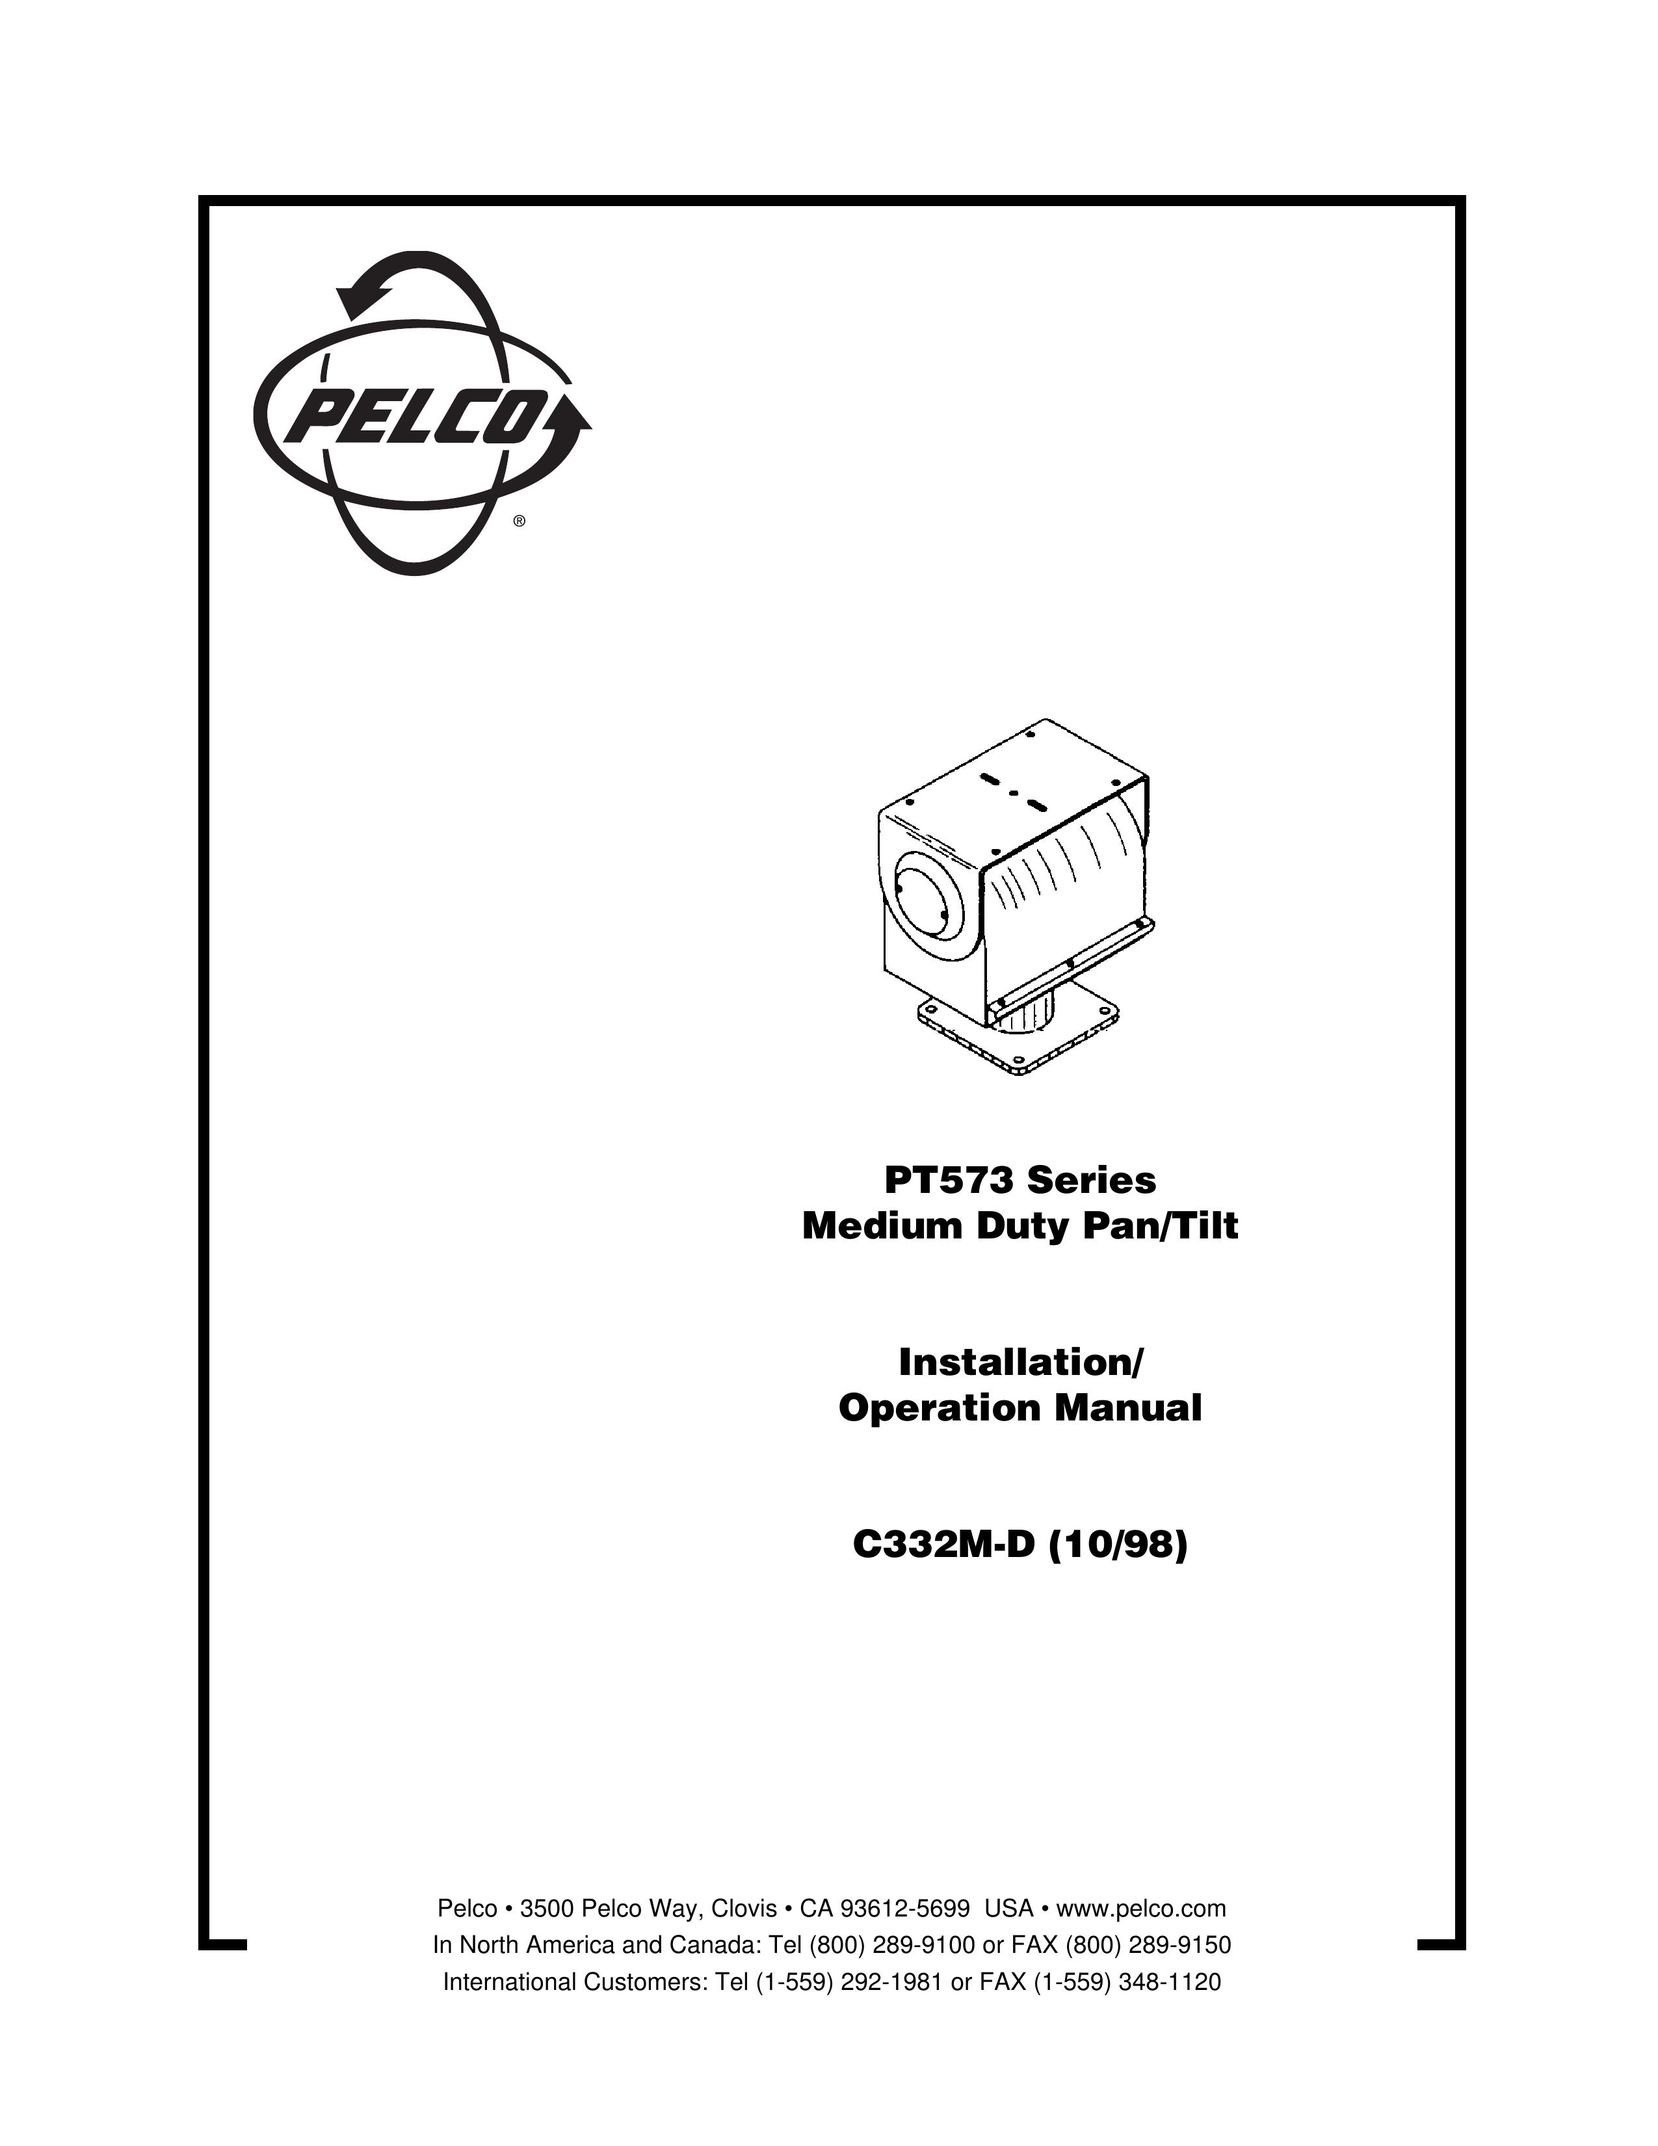 Pelco C332M-D Model Vehicle User Manual